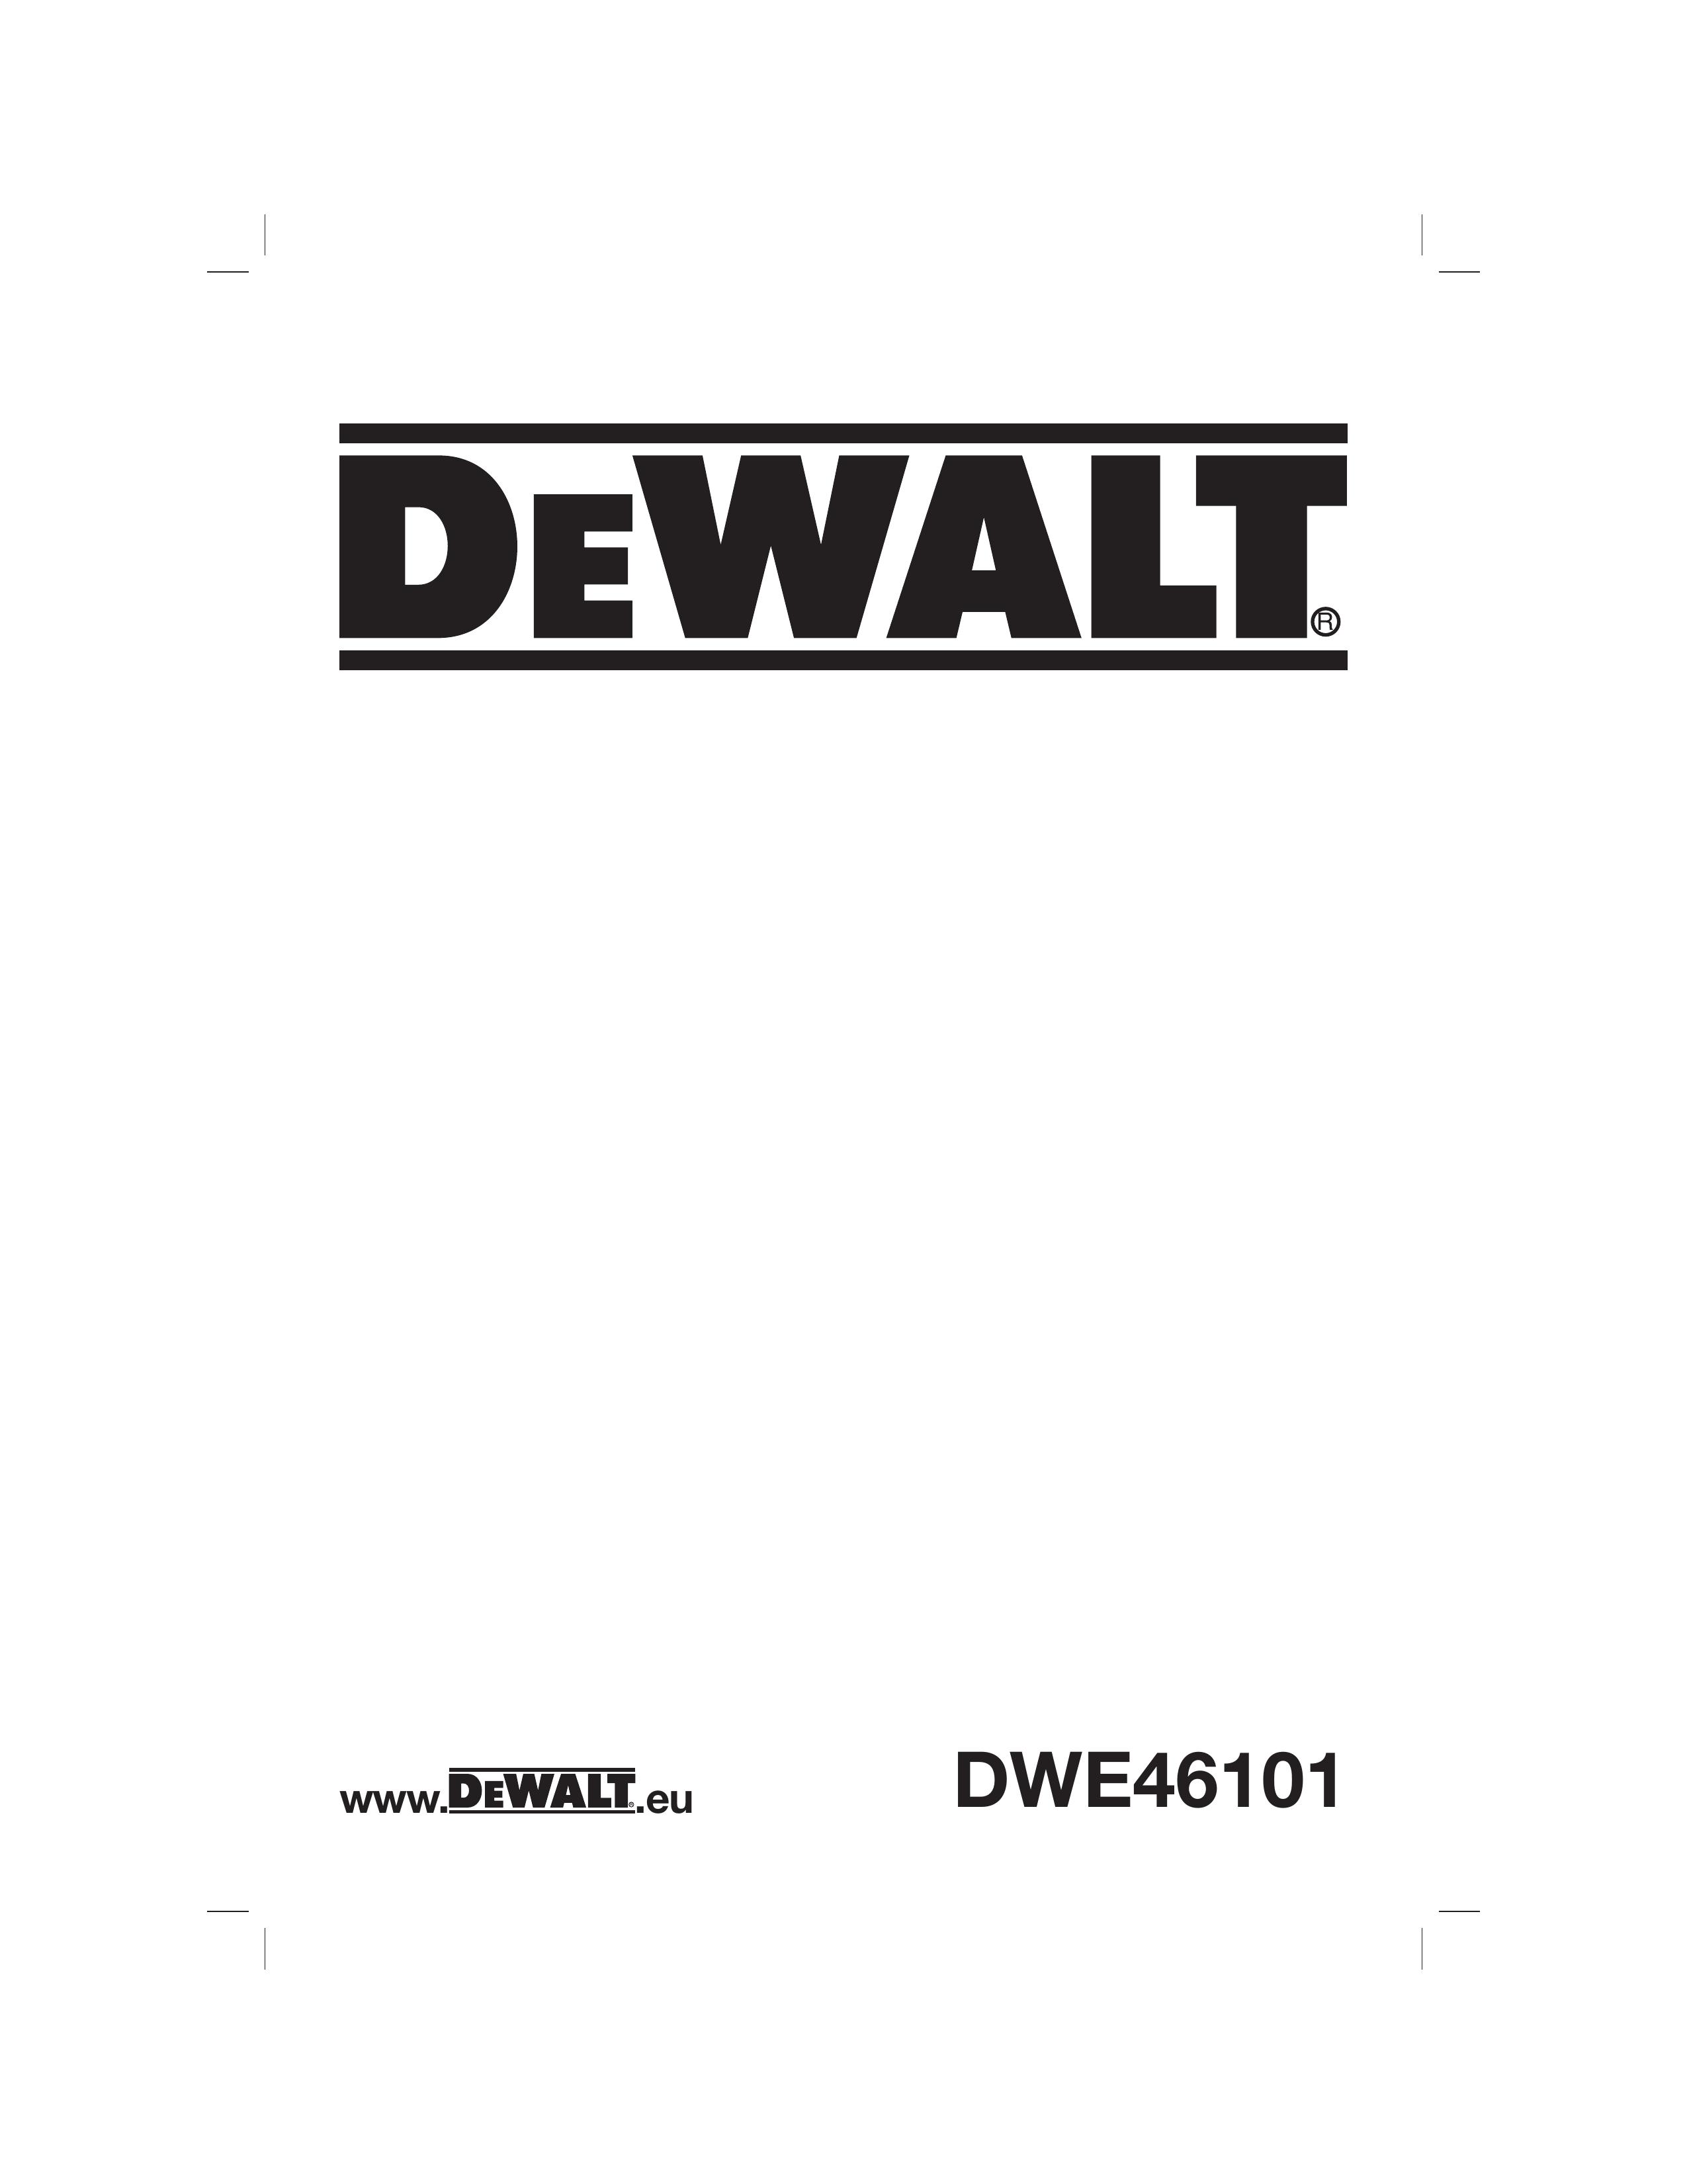 DeWalt DWE46101 Lawn Aerator User Manual